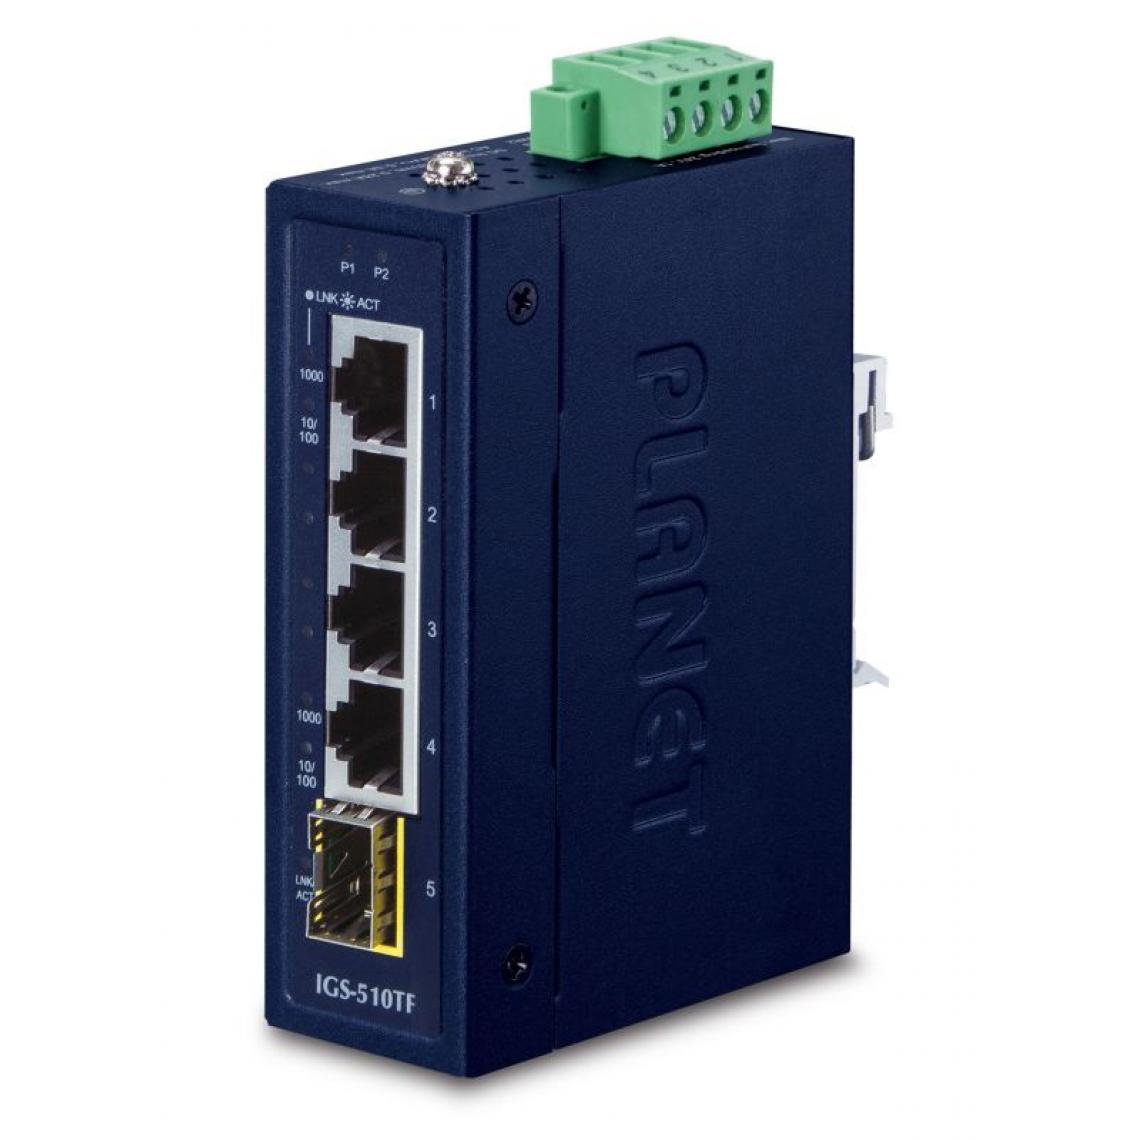 Edel Records - PLANET IGS-510TF commutateur réseau Non-géré Gigabit Ethernet (10/100/1000) Bleu - Switch